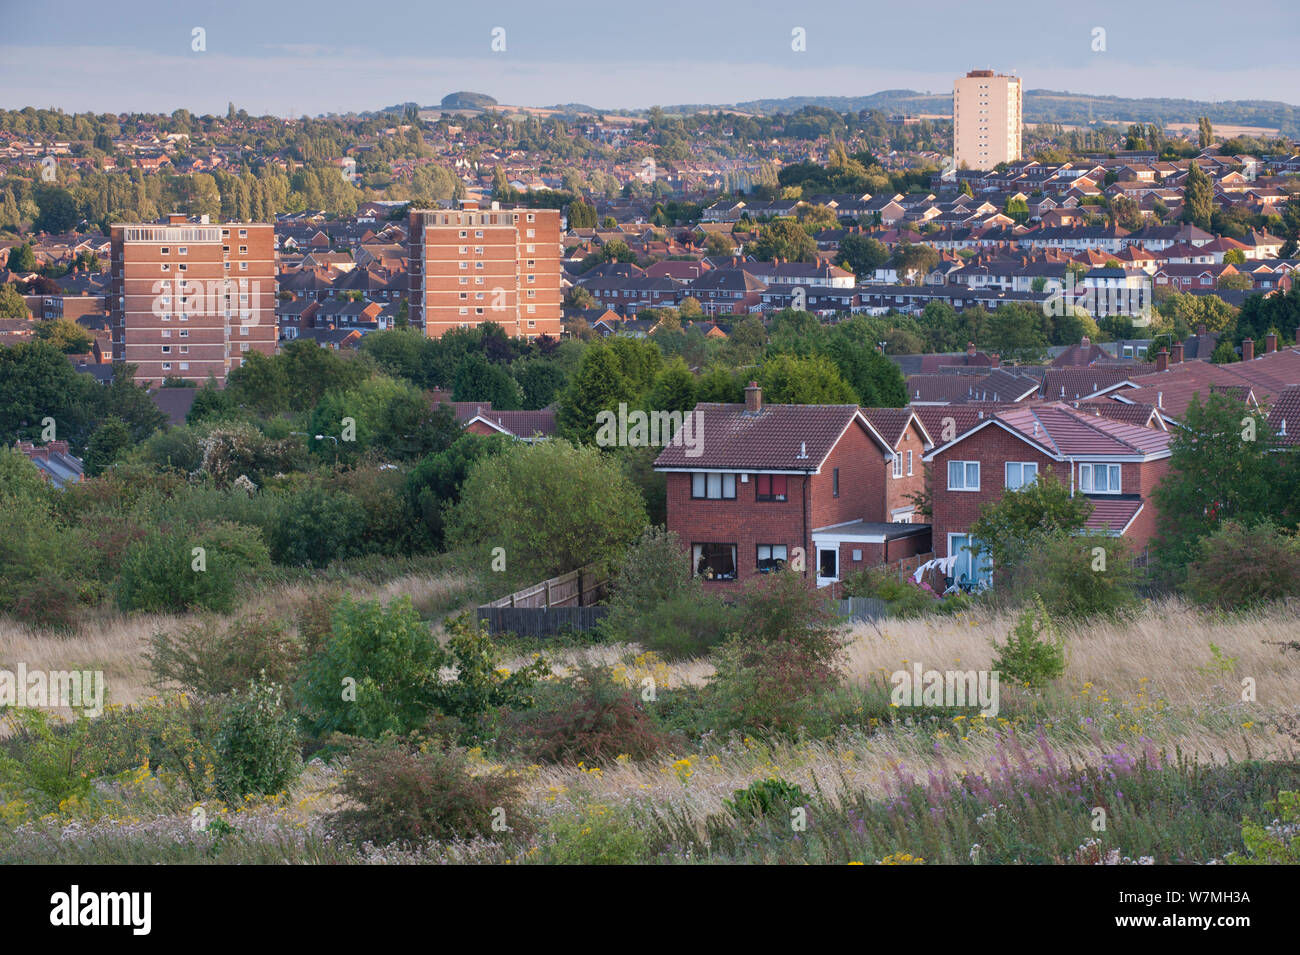 Blick von der Rowley Hügel über Dudley, Sandwell und Birmingham, West Midlands, England, UK, August. VISION 2020 Buch. Stockfoto